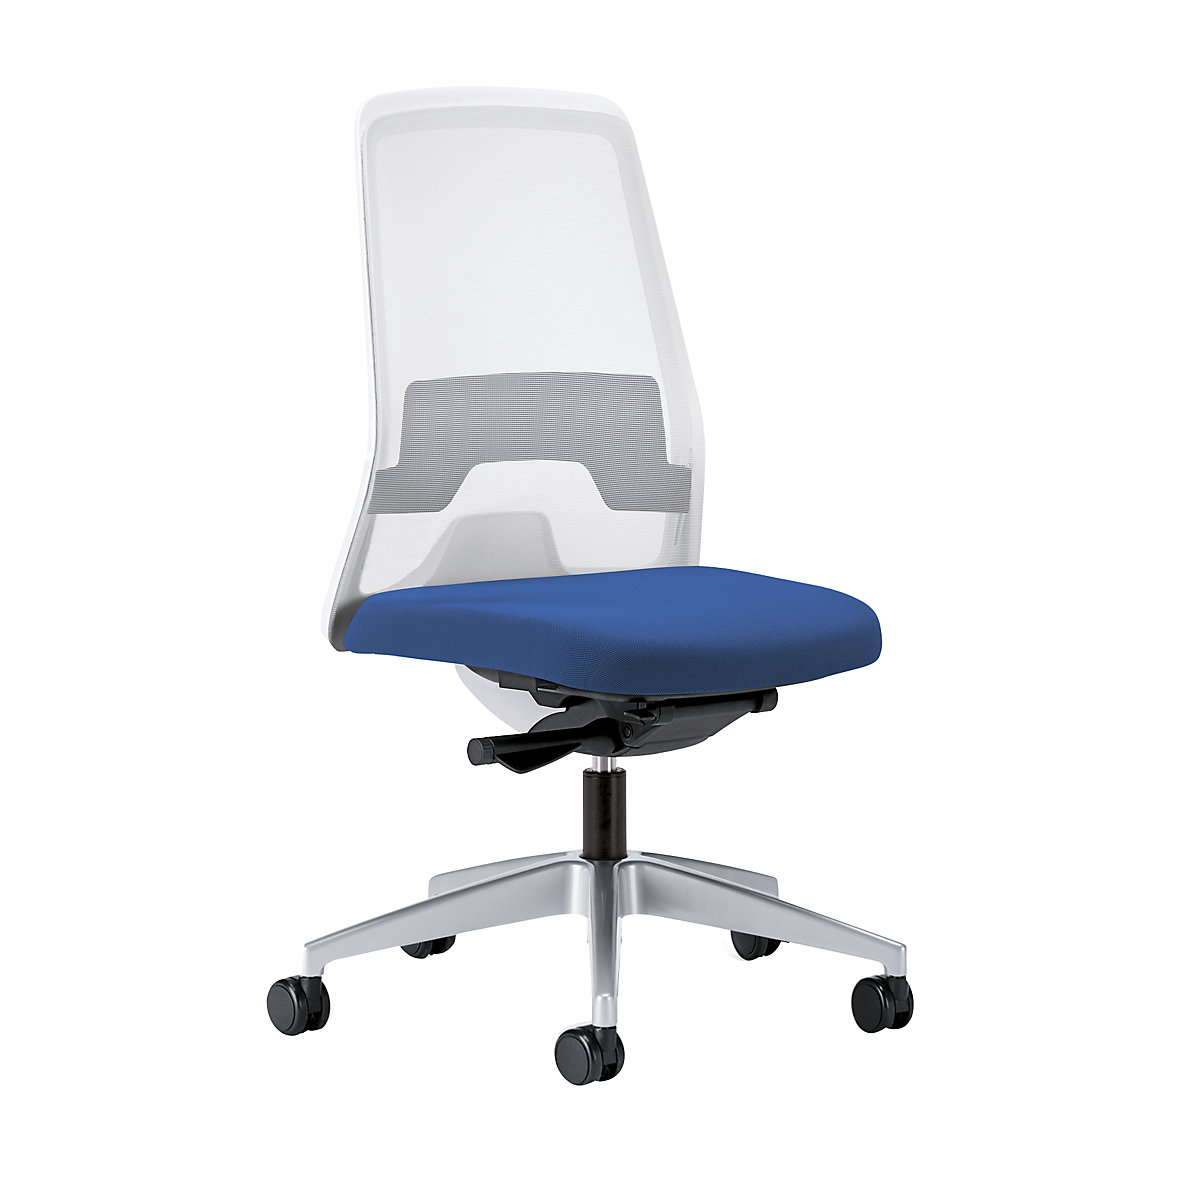 Krzesło obrotowe dla operatora EVERY, oparcie siatkowe, białe – interstuhl, szkielet brylantowo-srebrny, z twardymi rolkami, niebieski gencjanowy, głęb. siedziska 430 mm-7